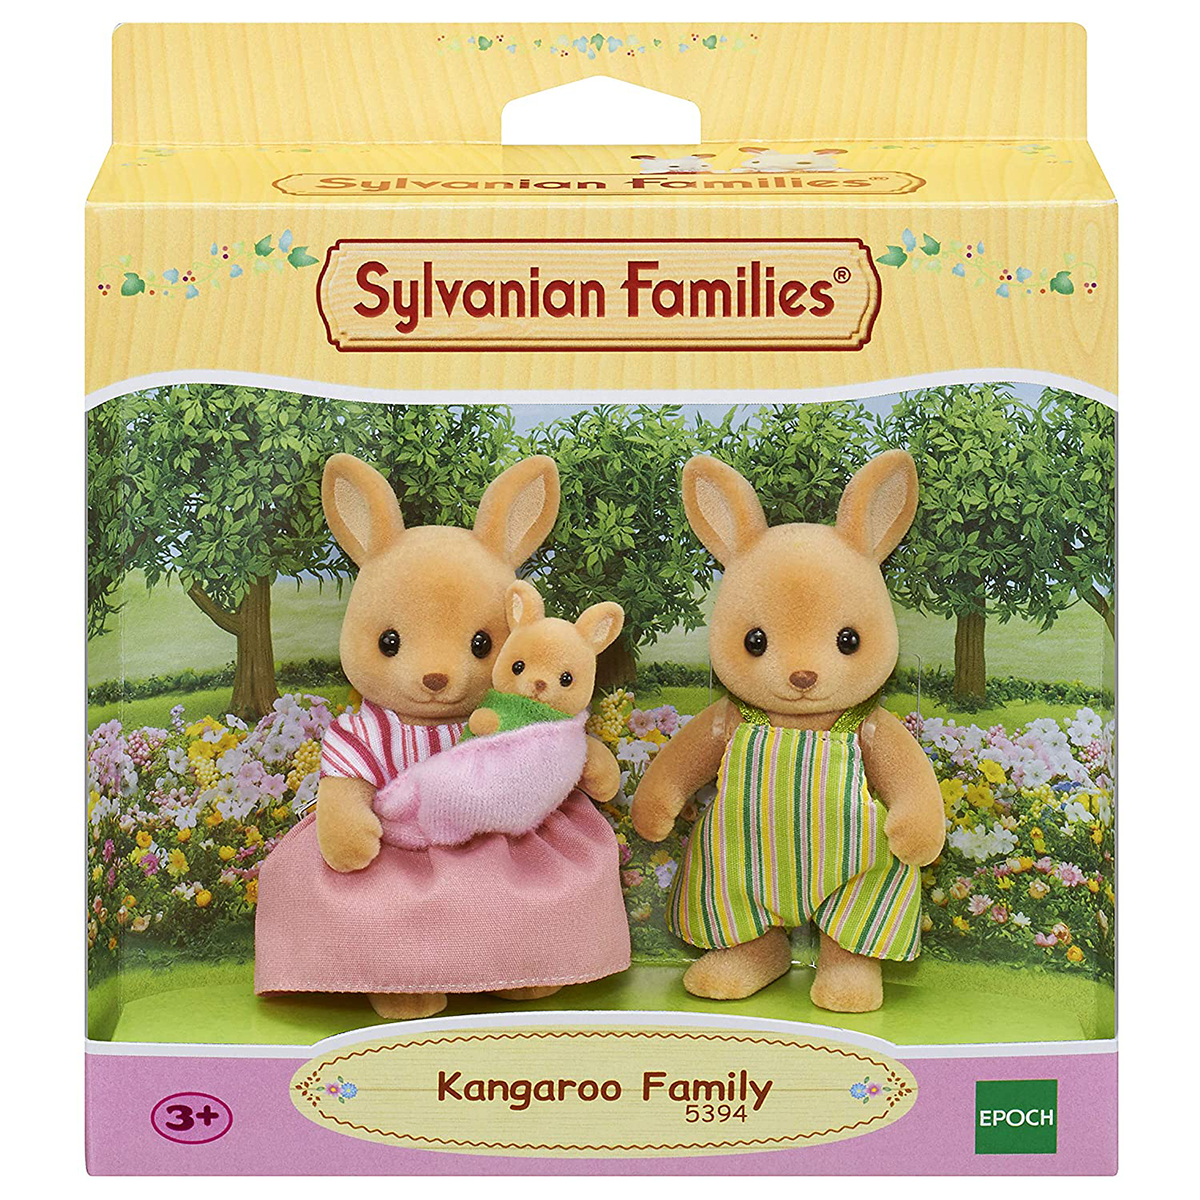 اسباب بازی سیلوانیان فامیلیز مدل Kangaroo Family Set کد 5394